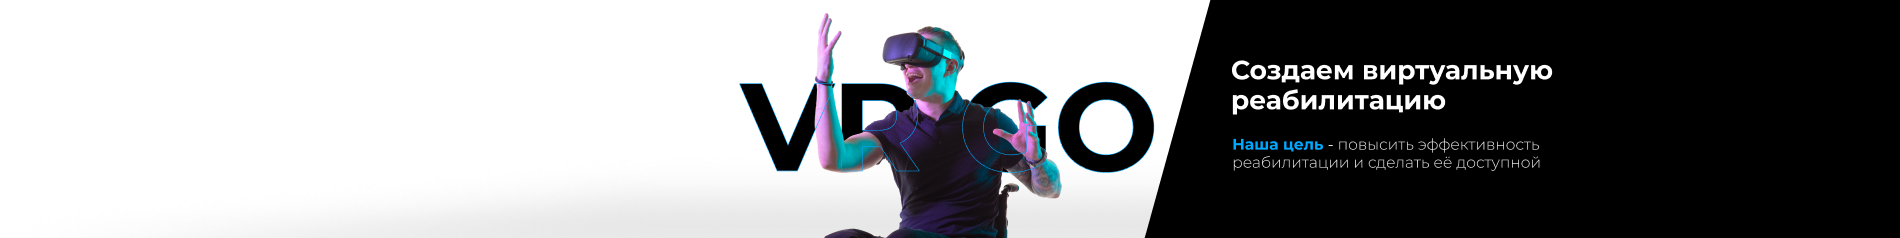 creator cover VR GO